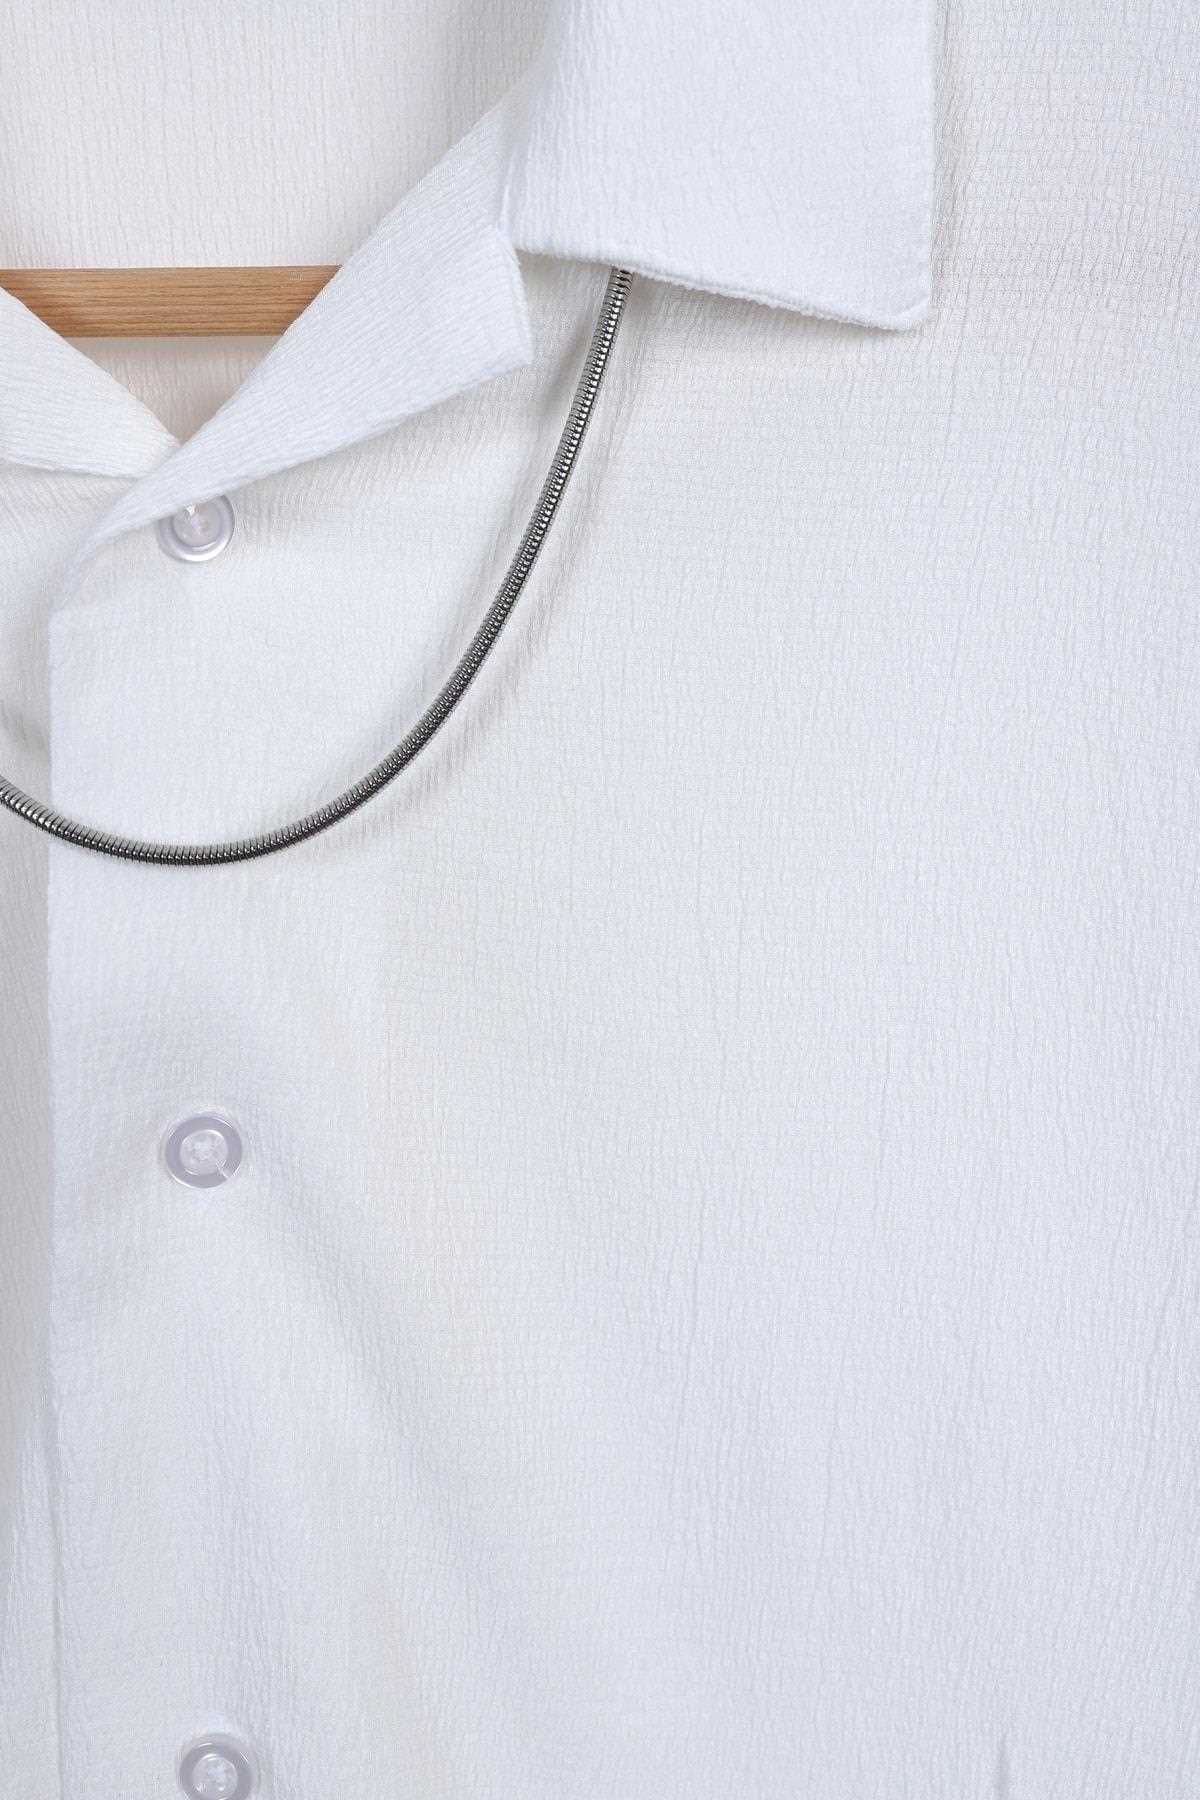 انواع پیراهن آستین کوتاه مردانه برند sopron outdoors رنگ سفید TY300779162